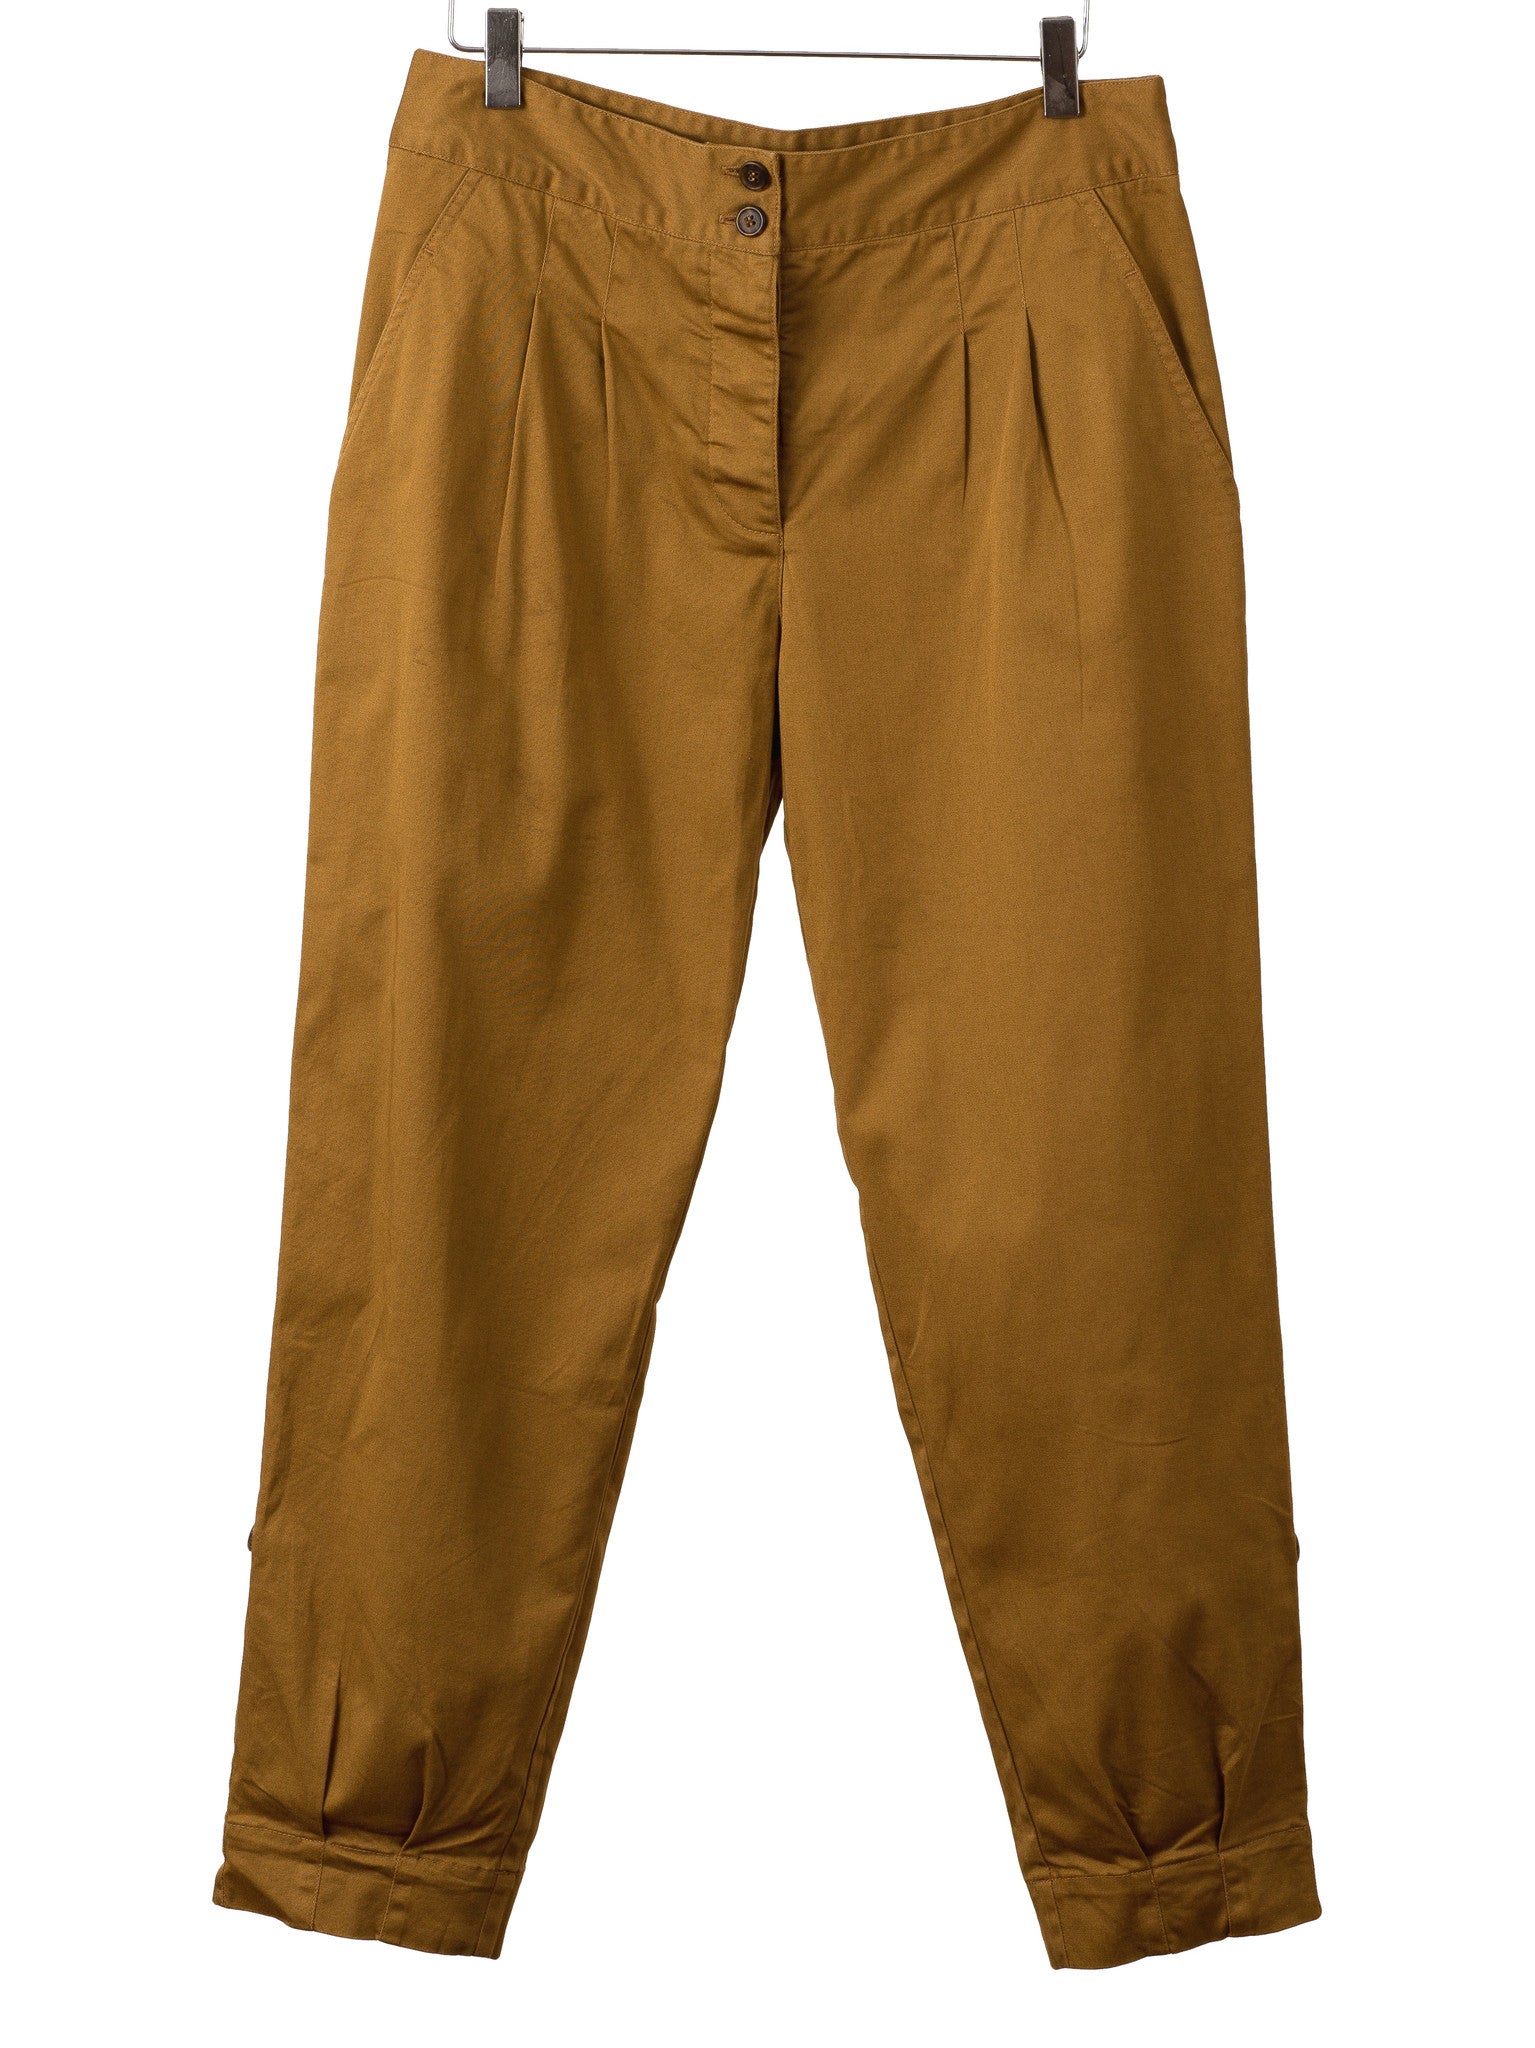 Moose Men's Slim Fit Chino Pant - Dark Khaki